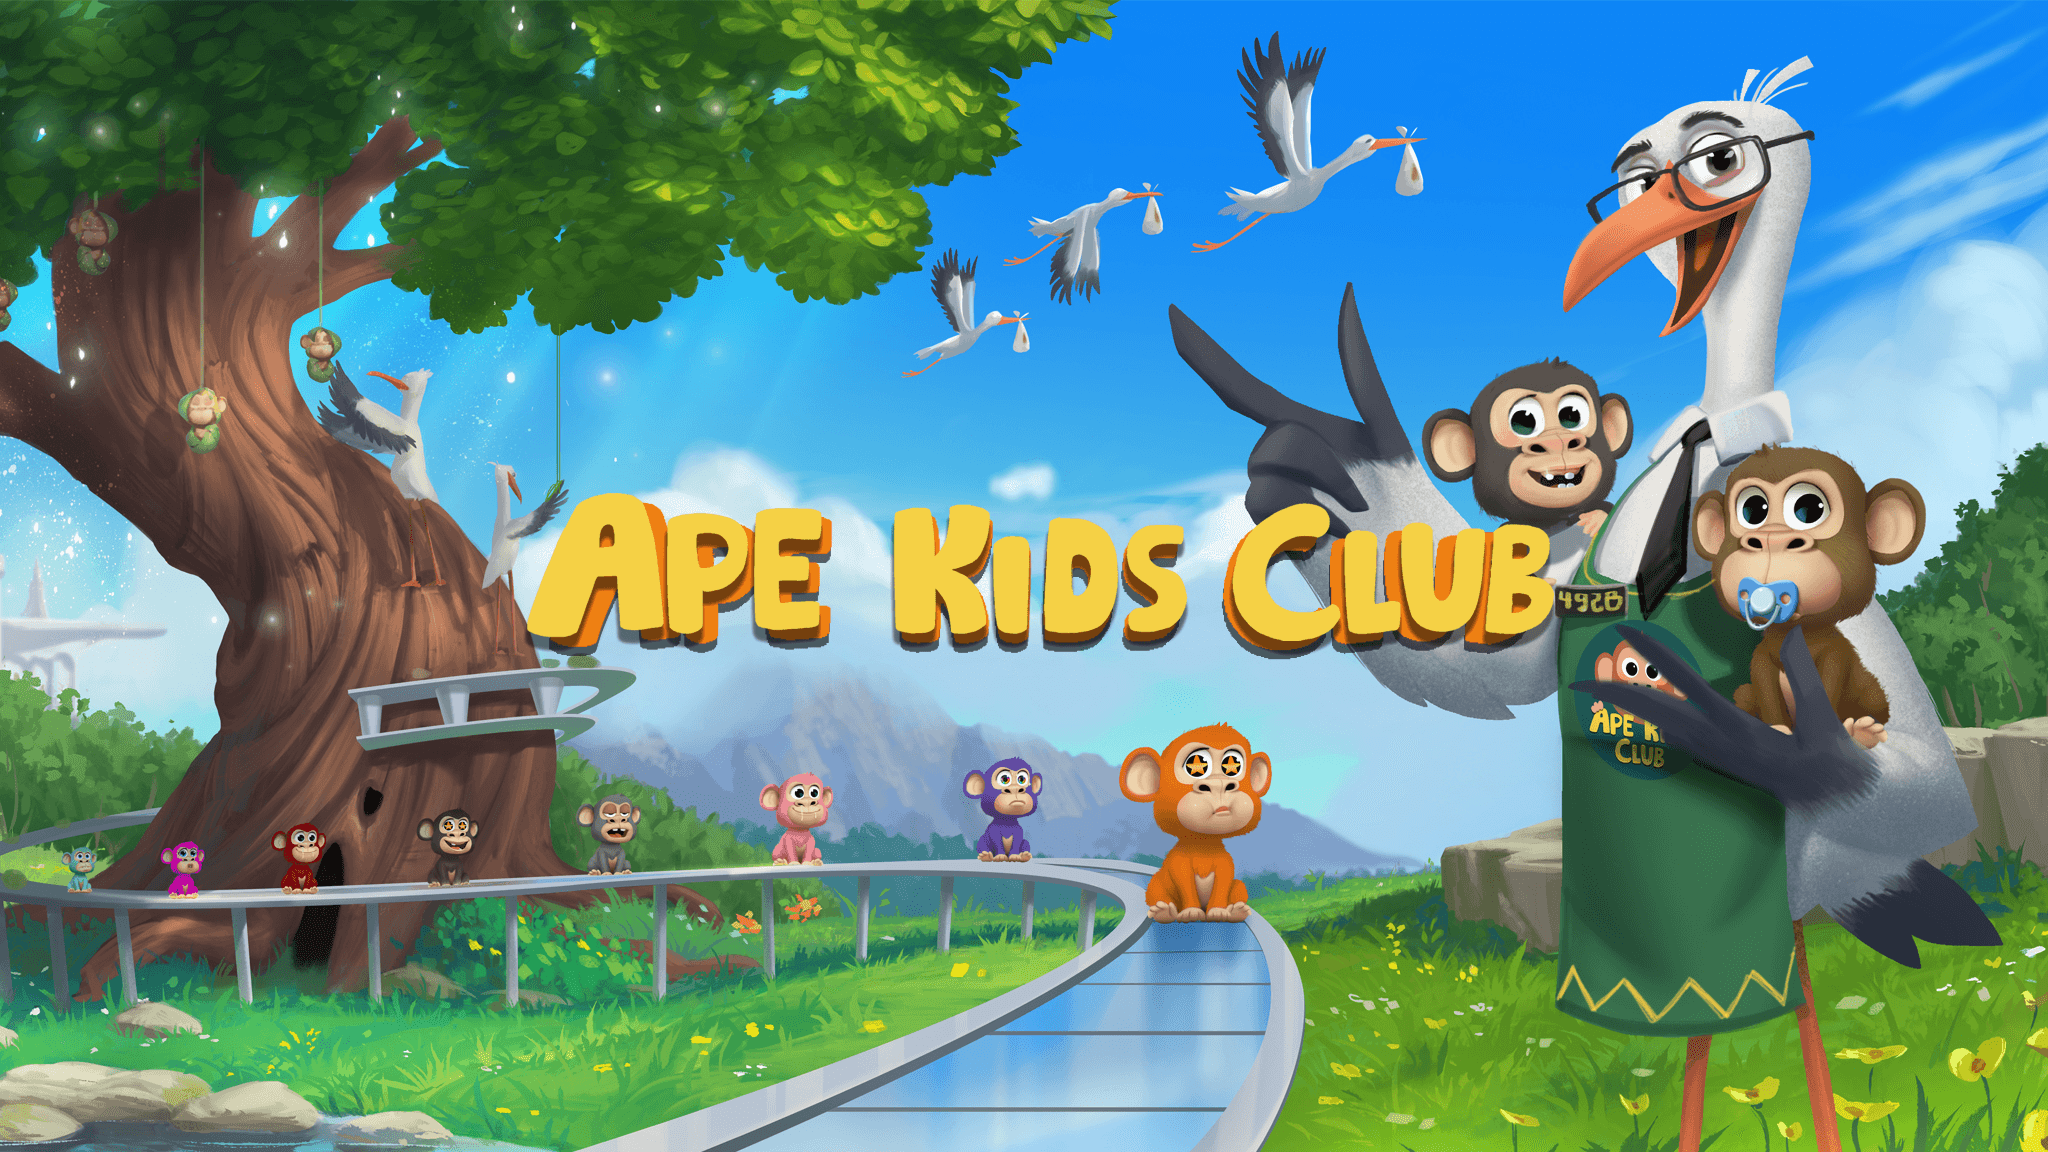 Ape Kids Club (AKC)